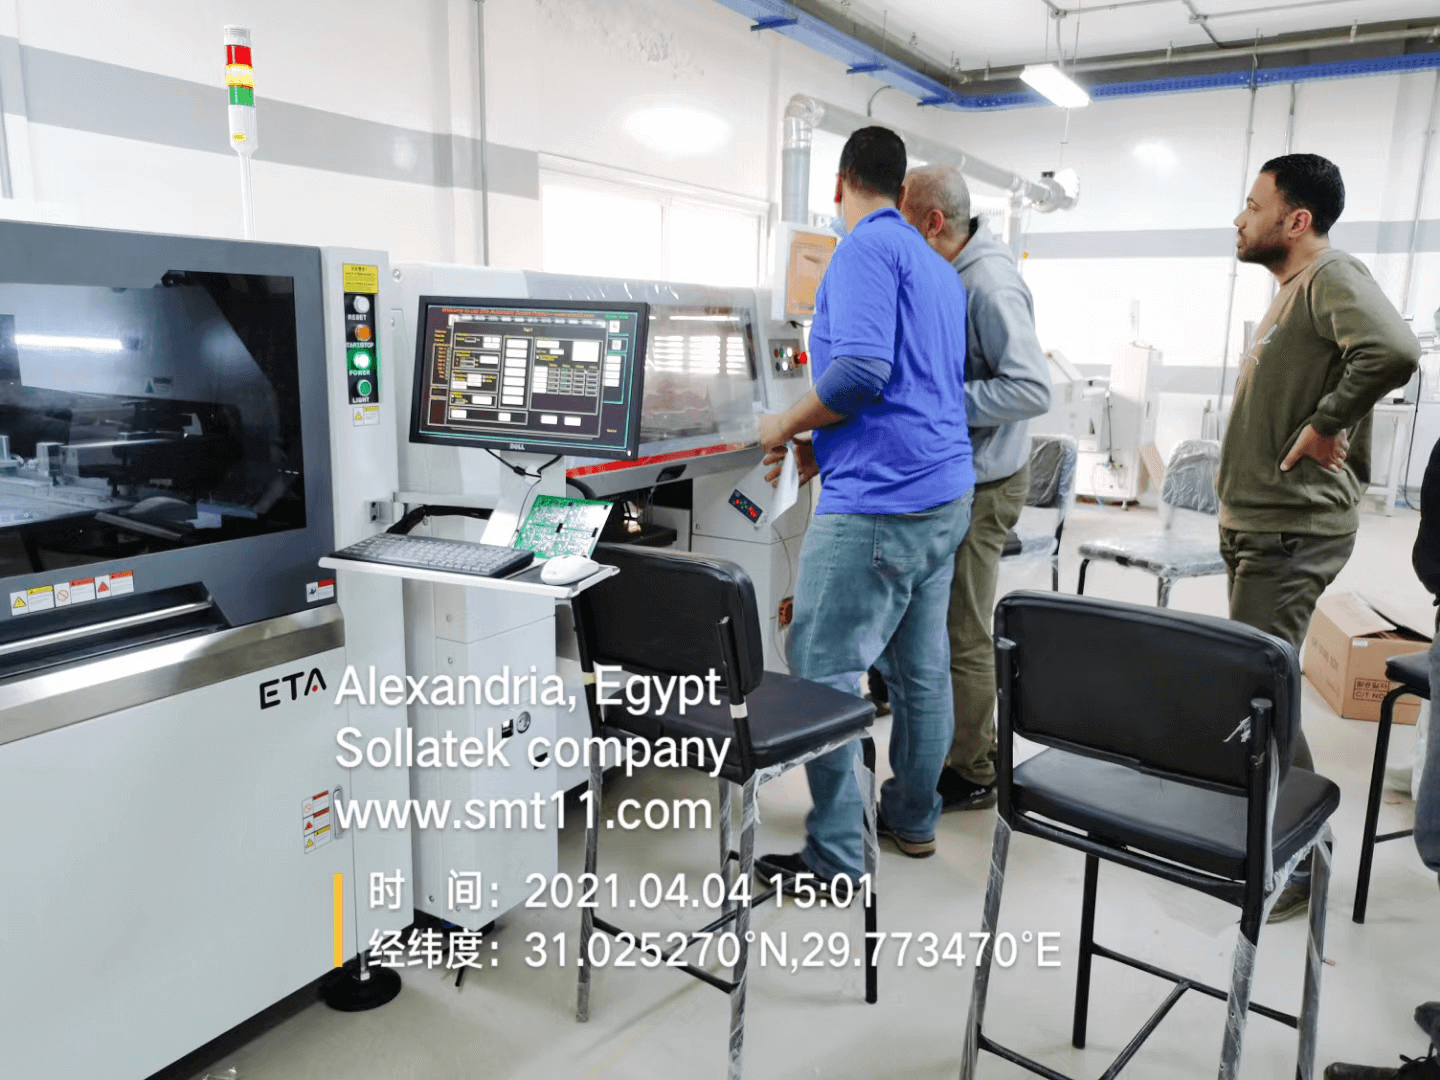 4 Глобальная служба ETA в Египте